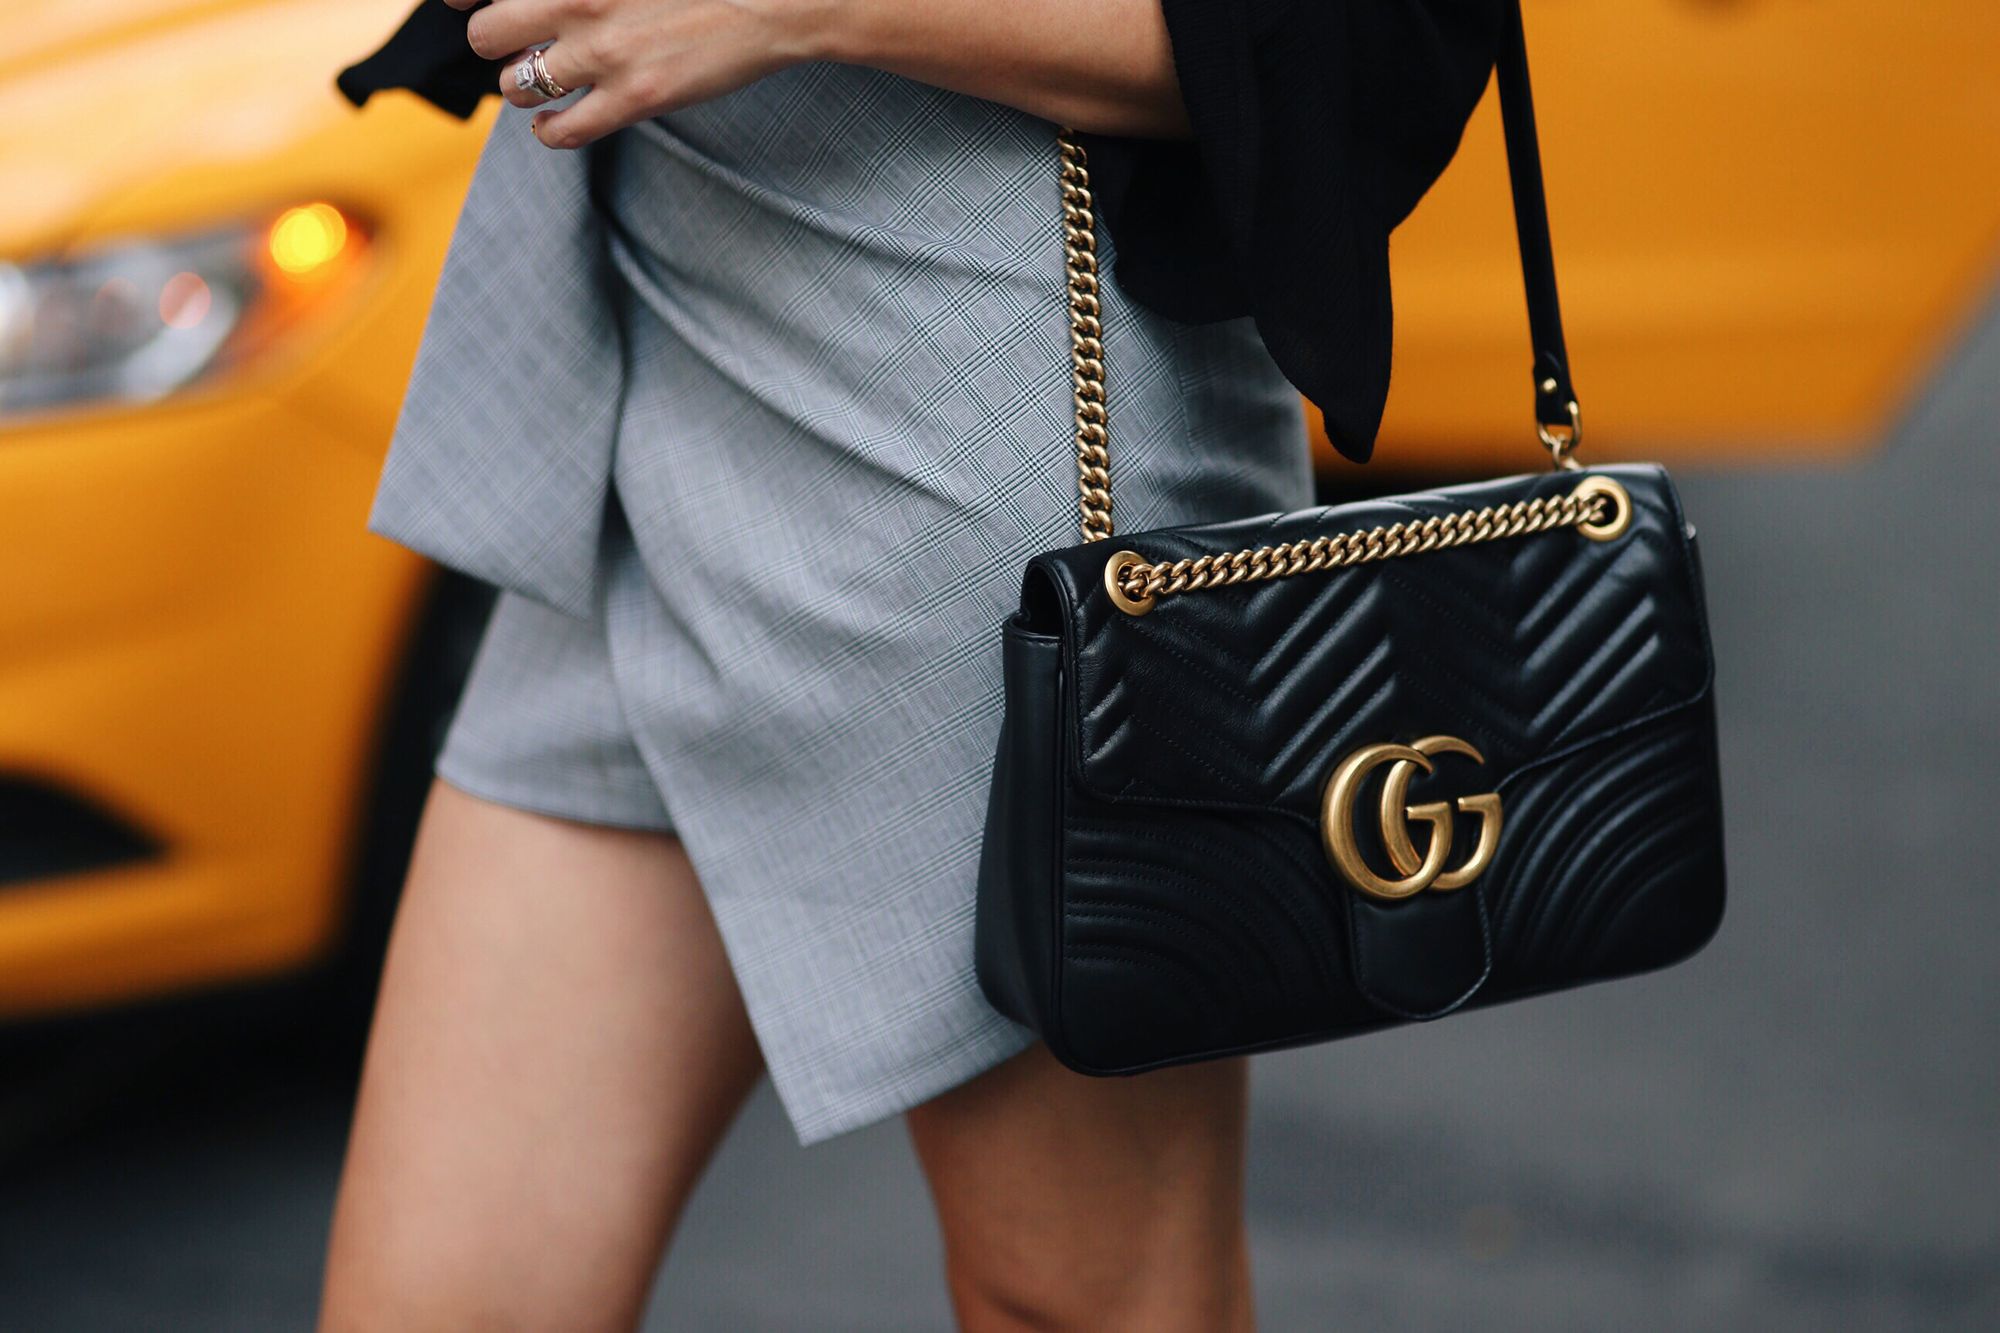 Black Gucci handbag